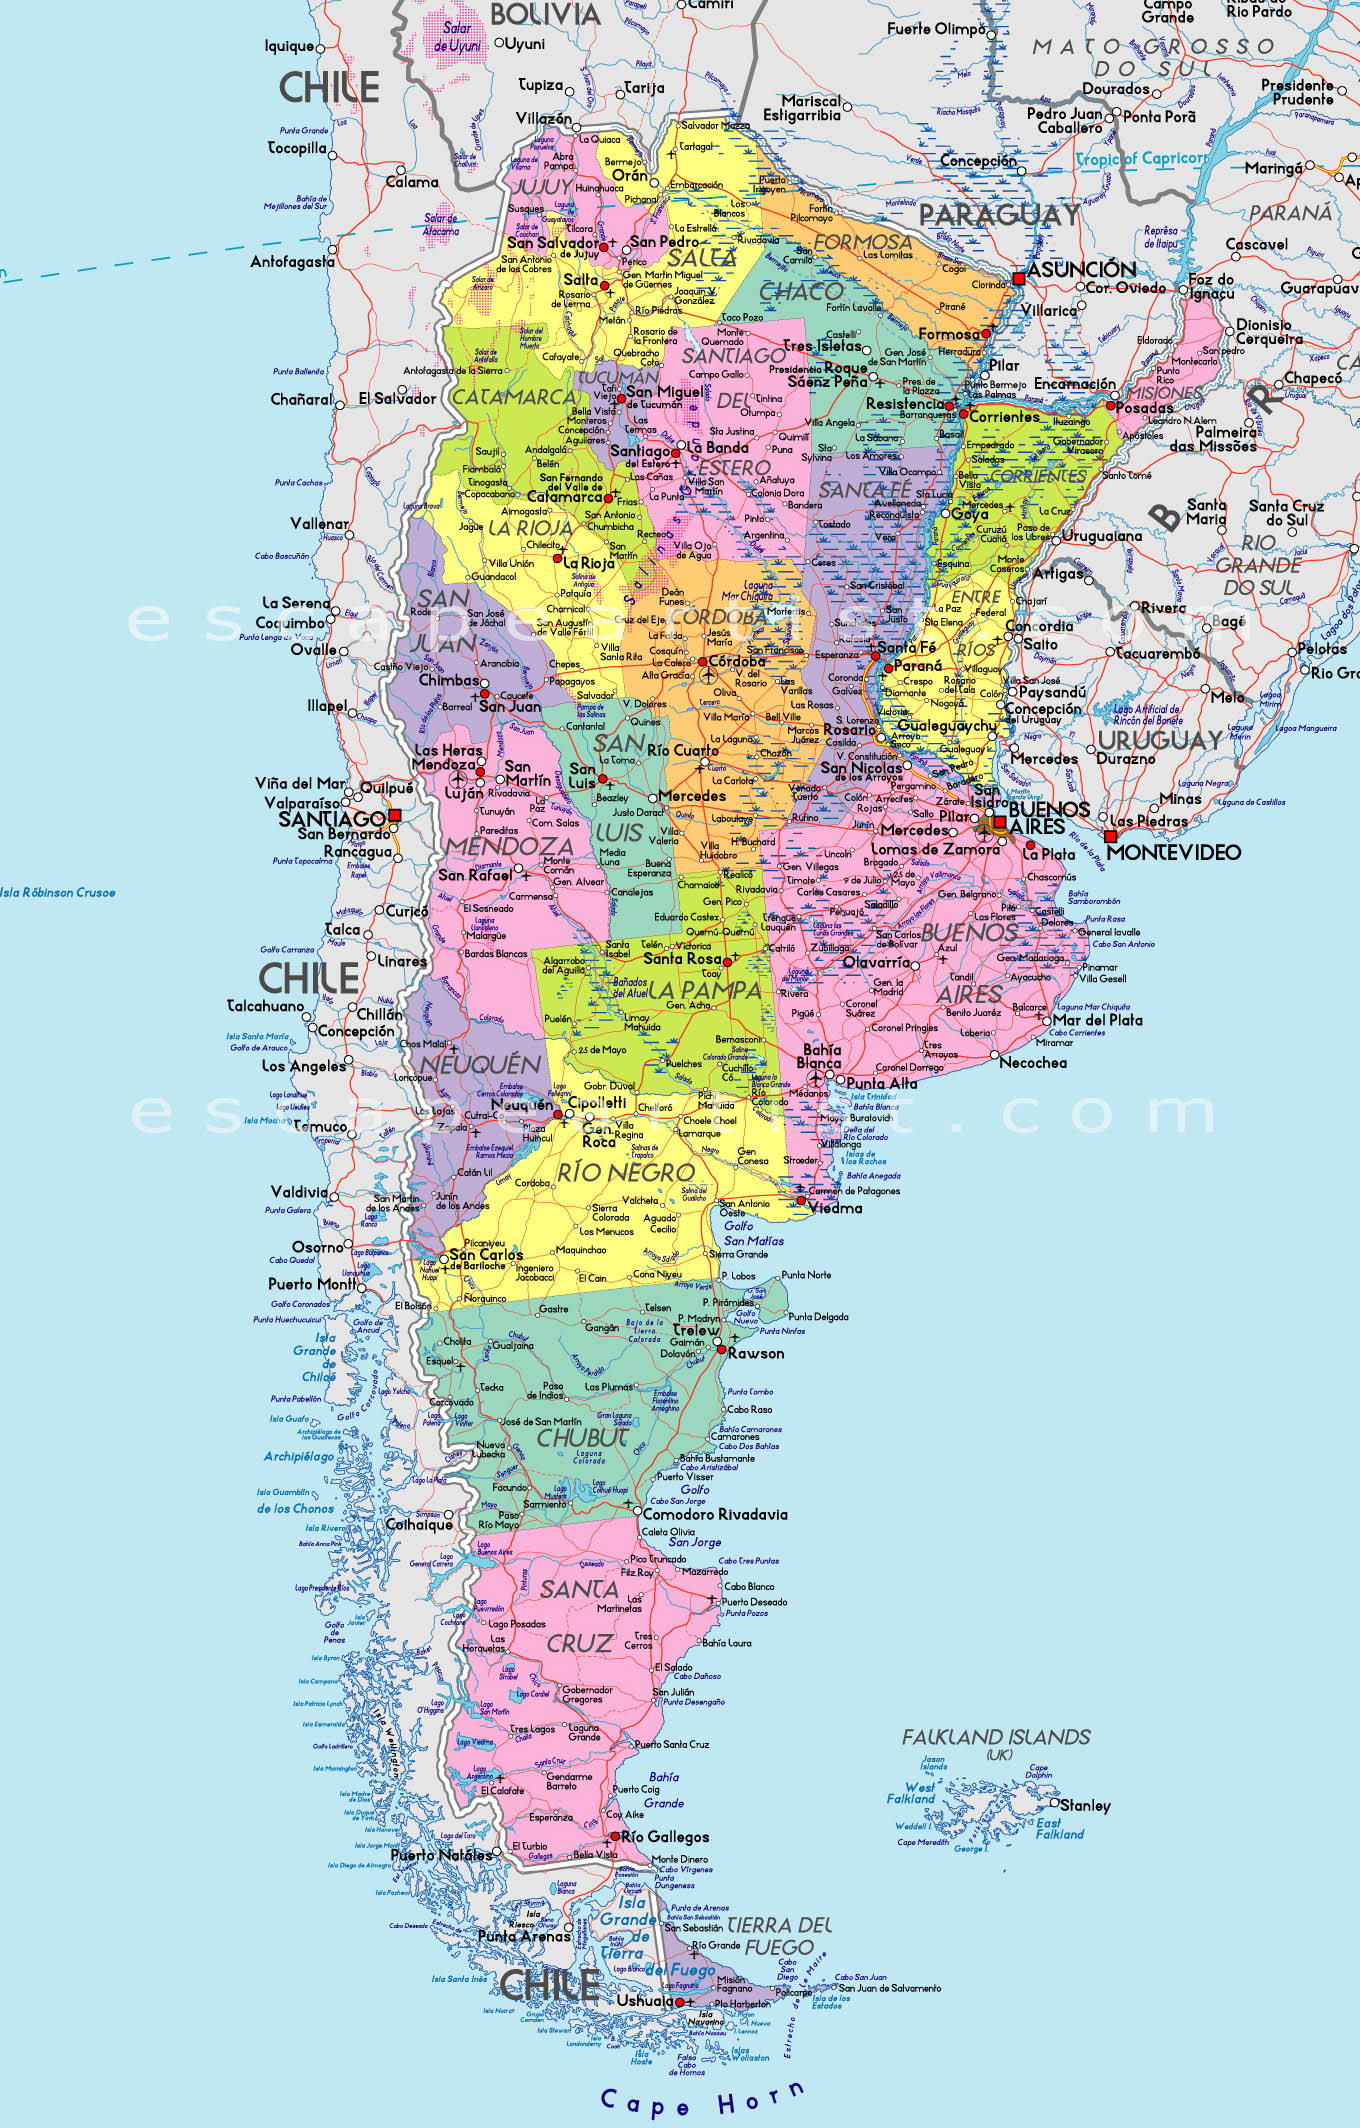 Argentina năm 2024 trên bản đồ thế giới: Argentina là một quốc gia đầy tiềm năng, với sự phát triển kinh tế và du lịch đang ngày càng nổi bật. Năm 2024, Argentina sẽ xuất hiện trên bản đồ thế giới như một nơi thú vị đầy màu sắc để khám phá. Hãy cùng nhau đắm mình trong vẻ đẹp thiên nhiên tuyệt vời của xứ sở Tango.